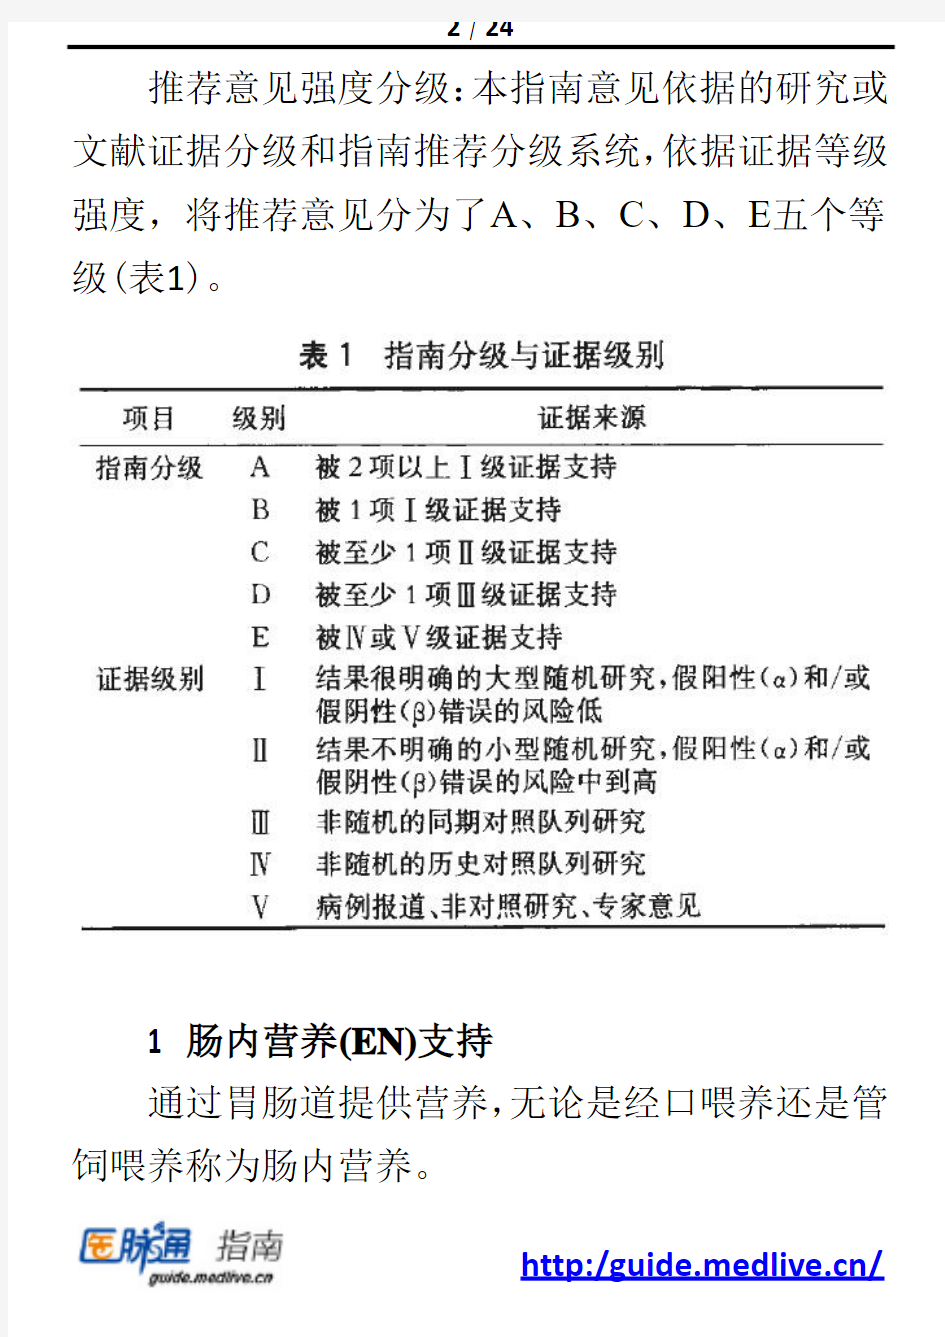 2013 中国新生儿营养支持临床应用指南